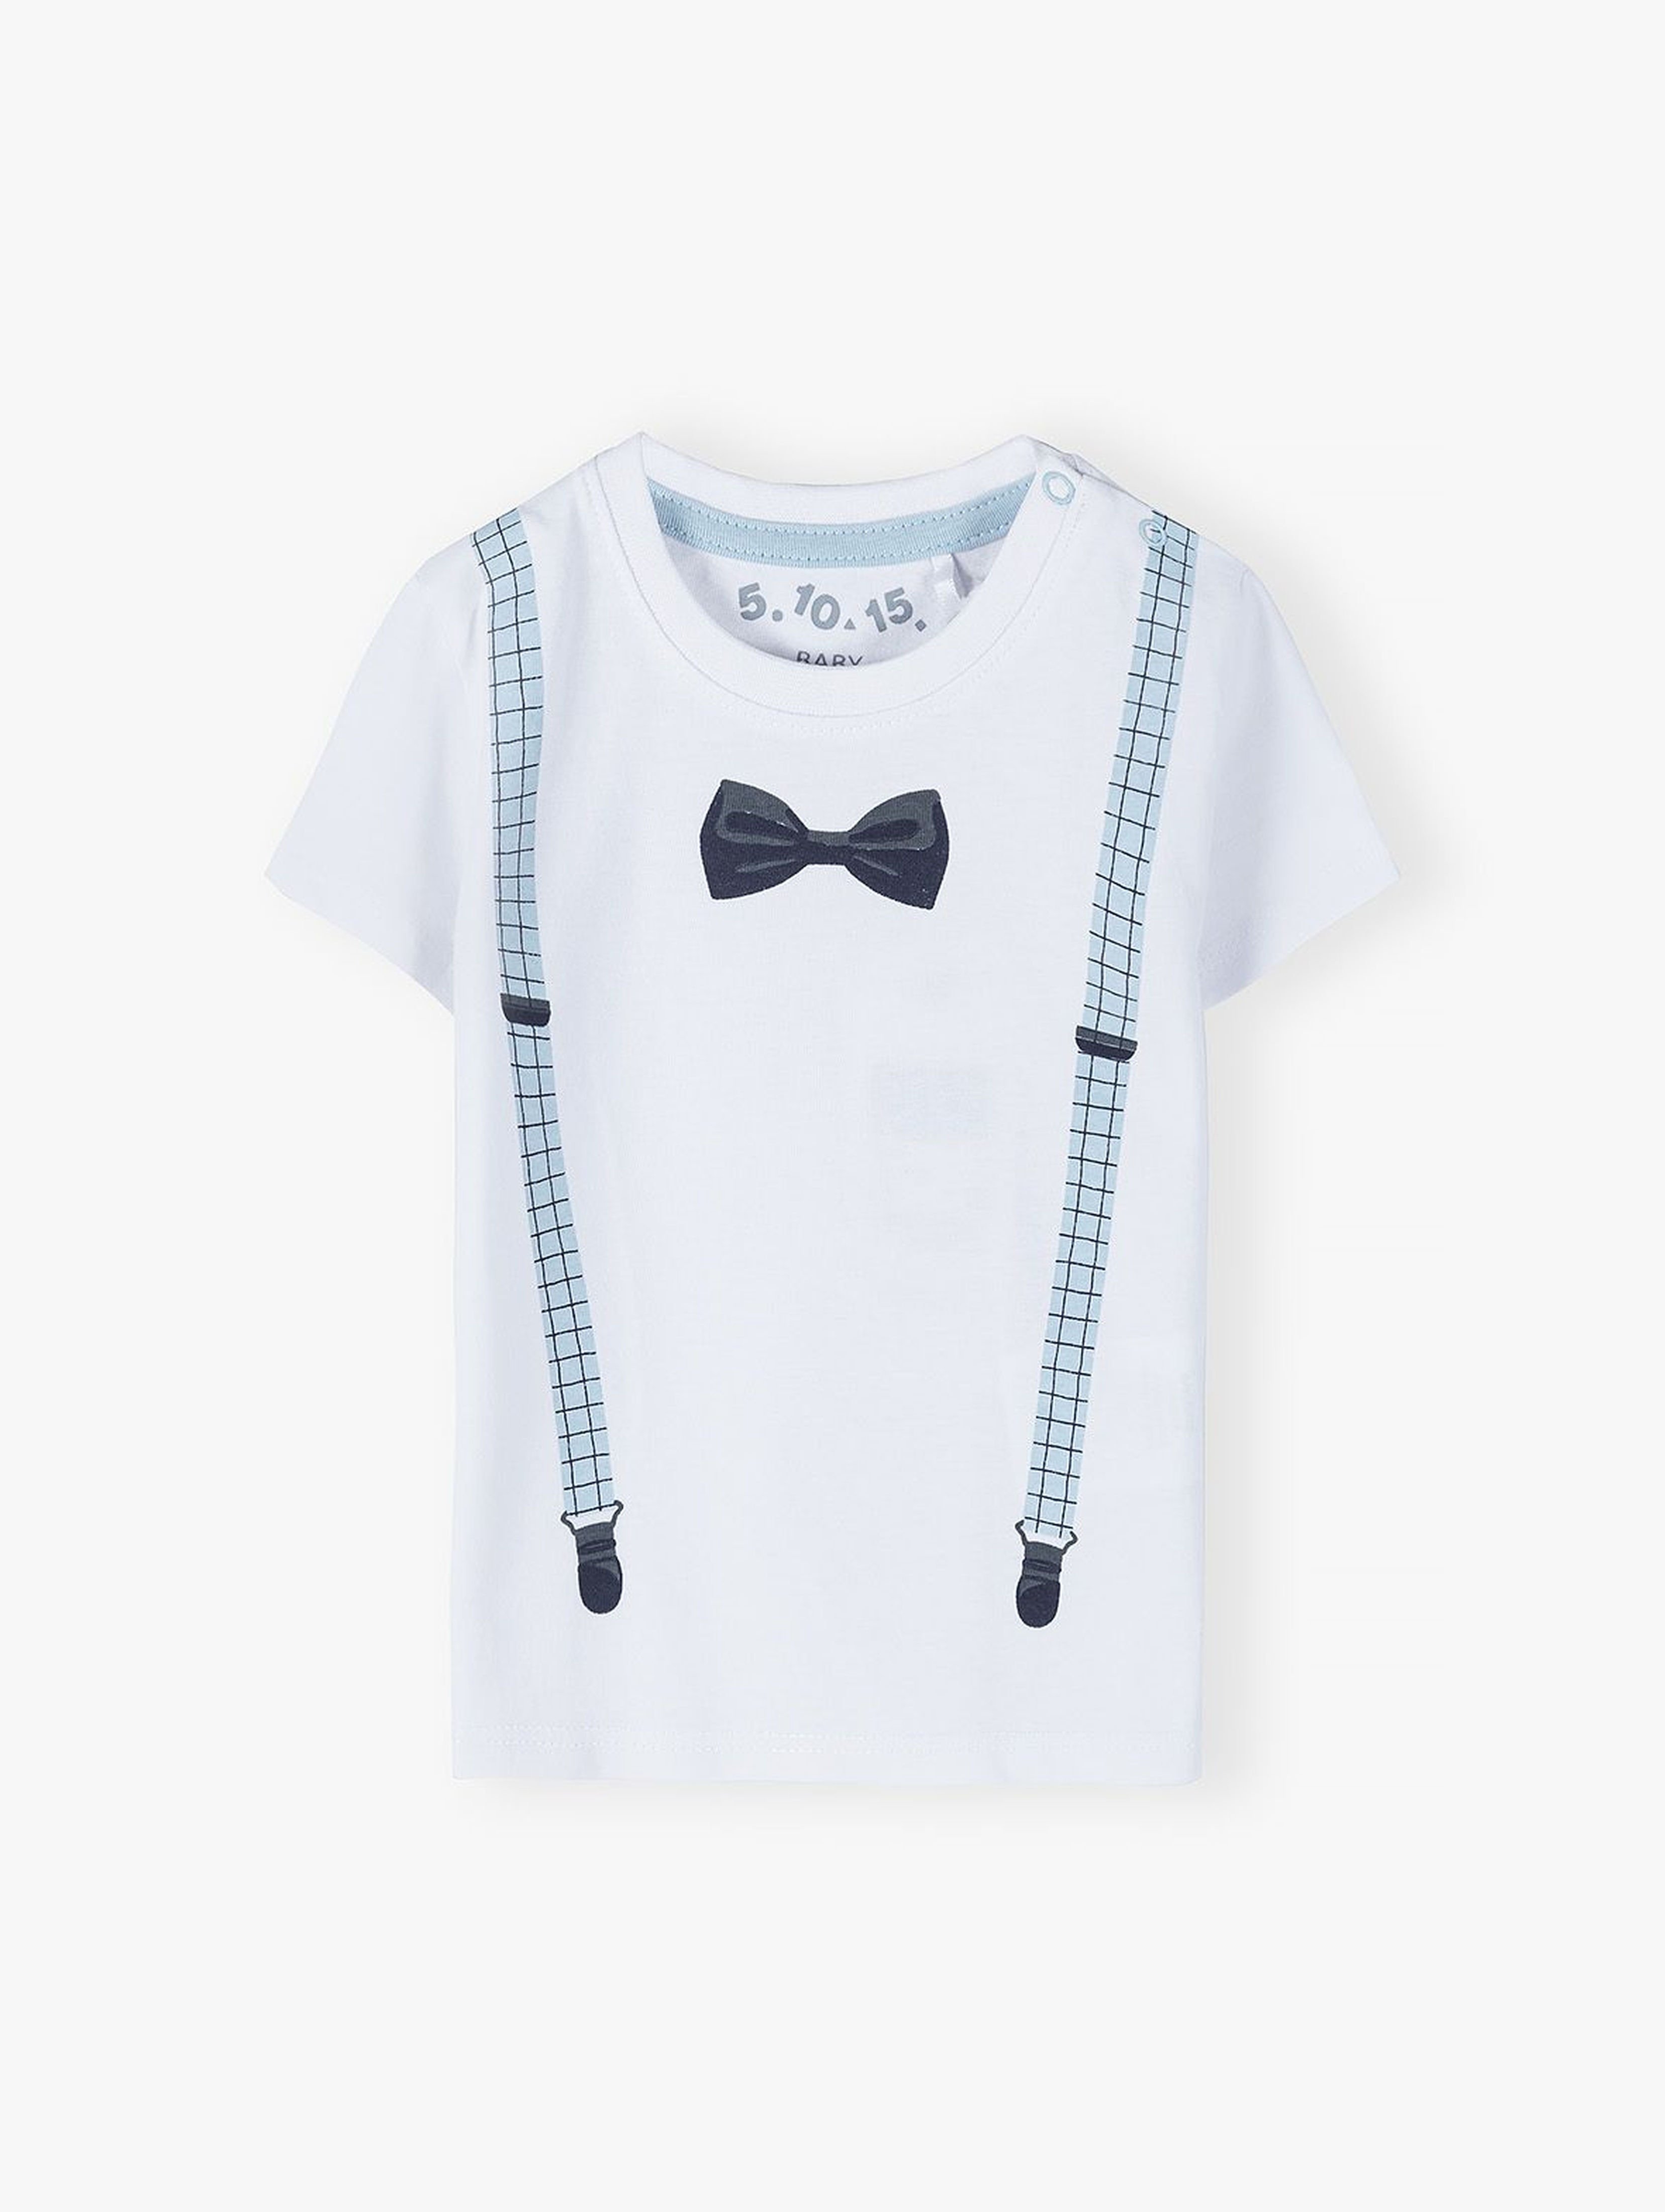 Bawełniany t-shirt niemowlęcy z nadrukiem imitującym szelki i muszkę - biała